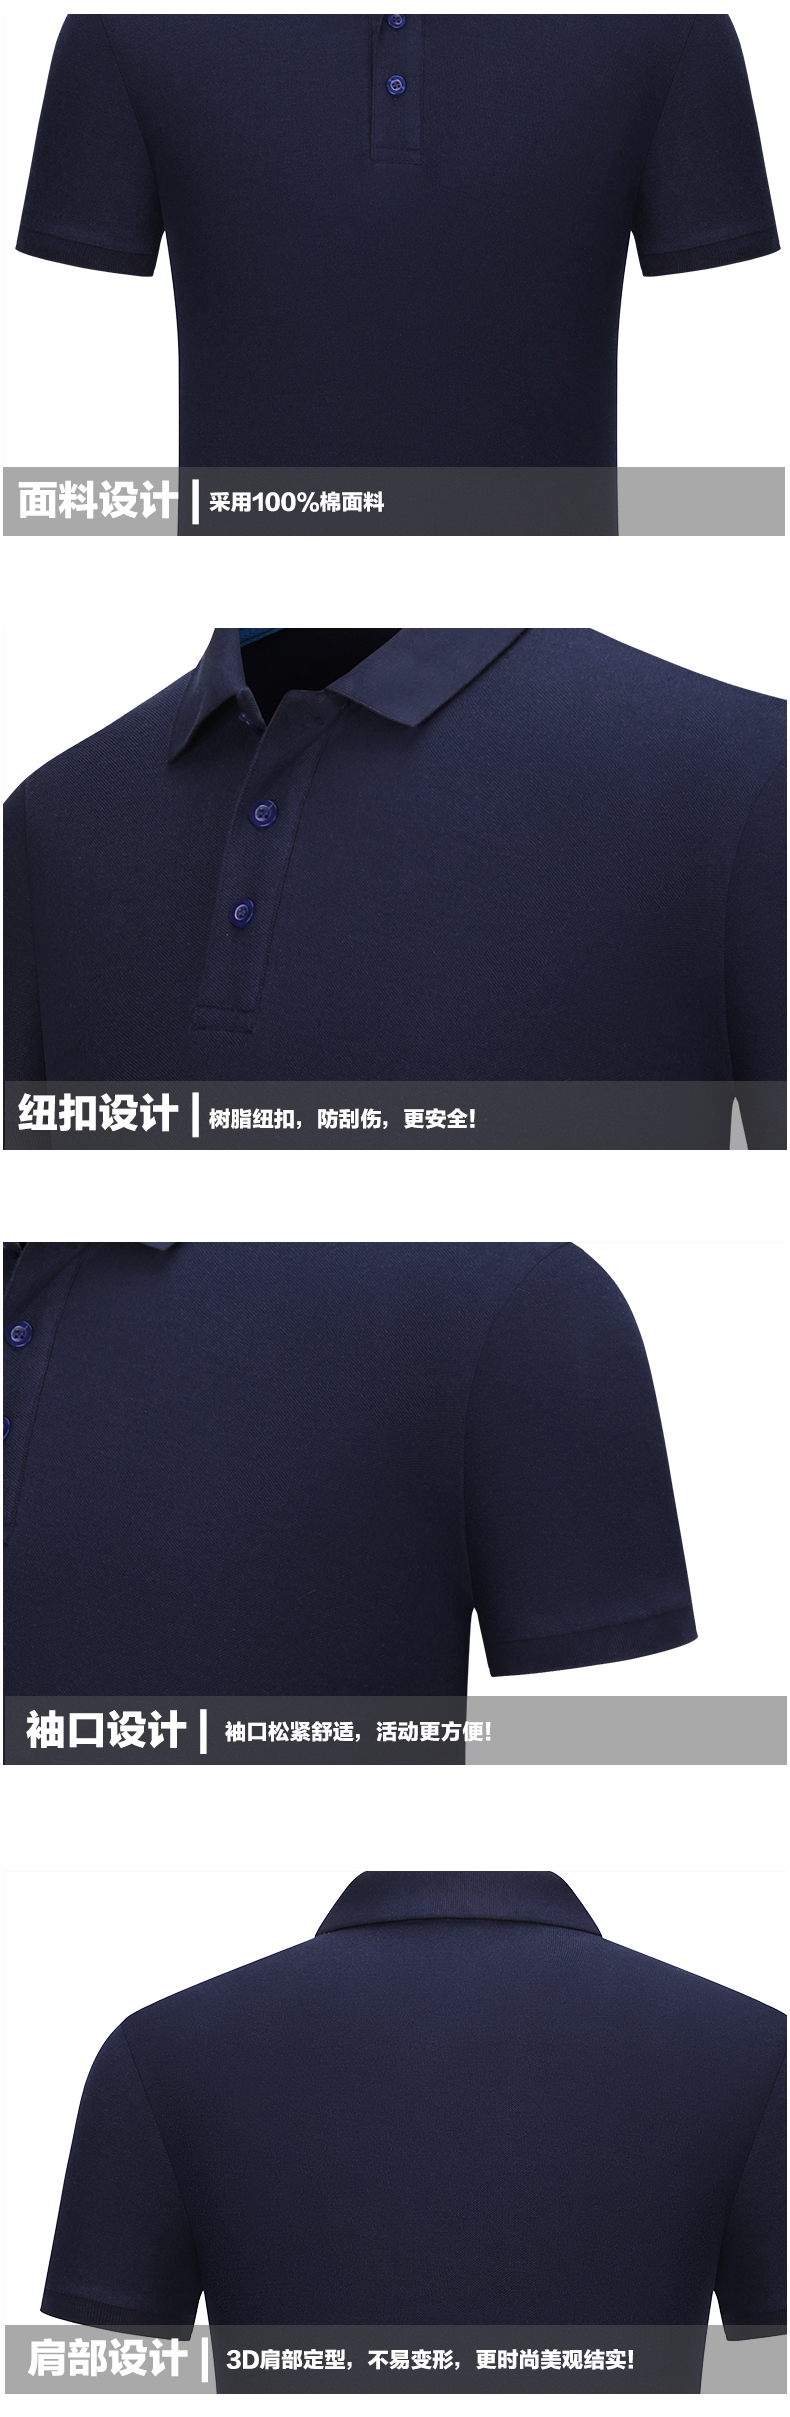 纯色全棉珠地网眼T恤衫TX0061(图10)